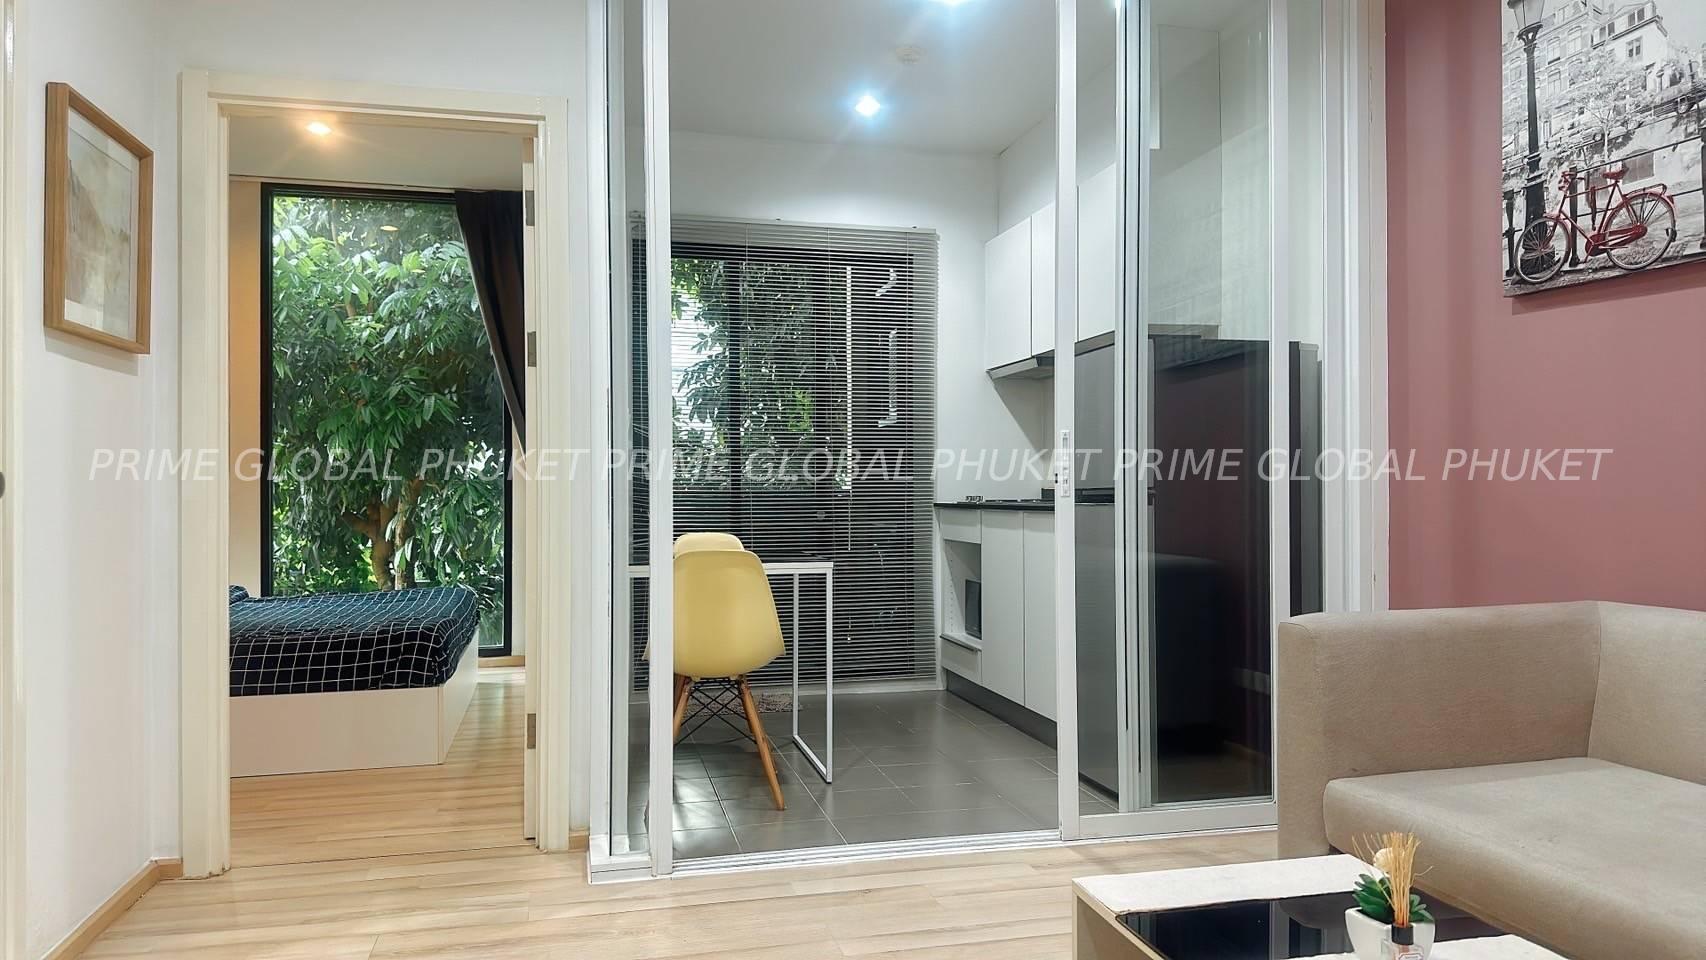 Condominium for Rent in Phuket town